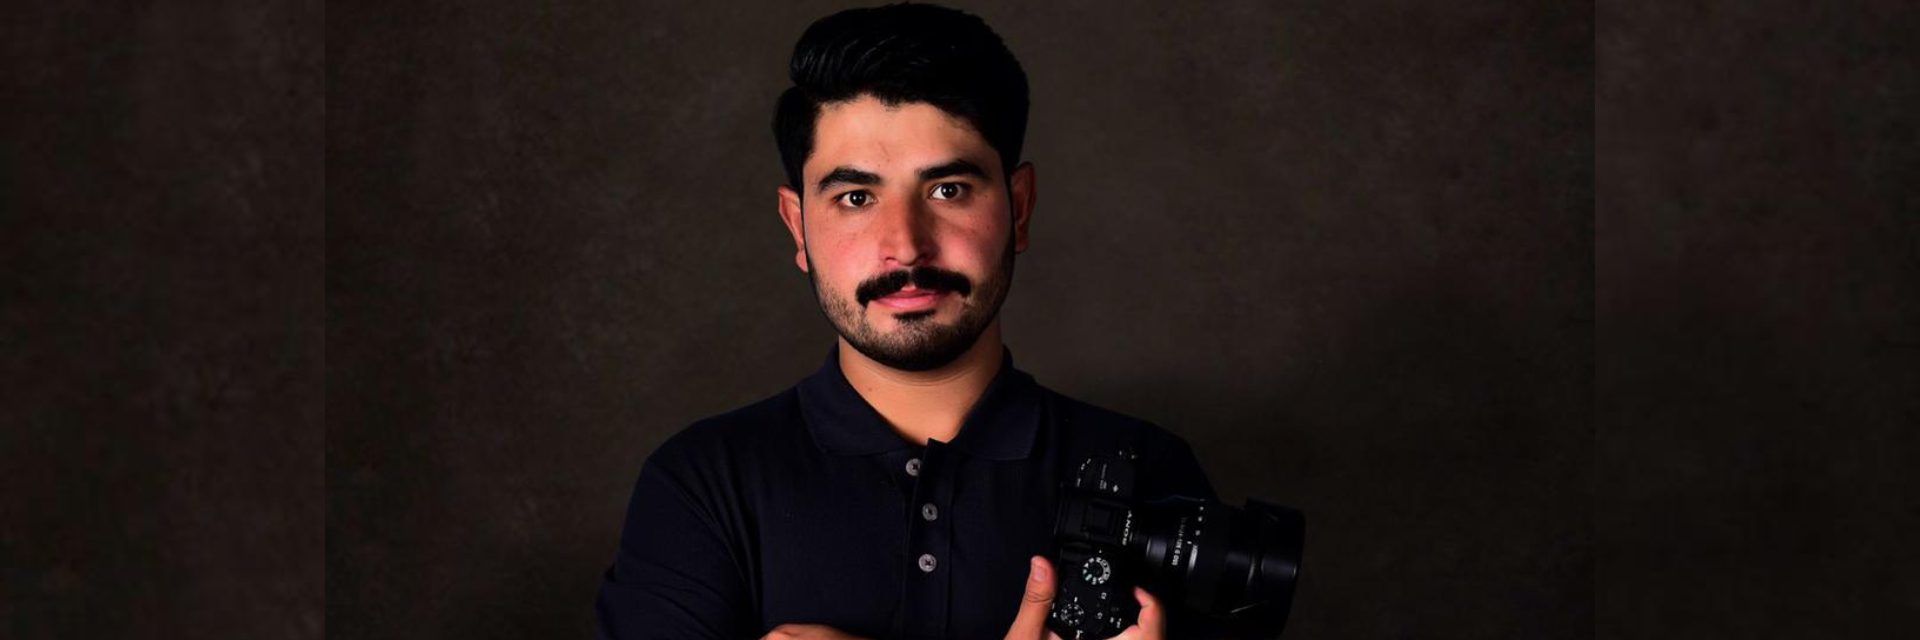 O fotógrafo Omer Khan, que adora fotografar a vida, em sua feliz fuga do Afeganistão